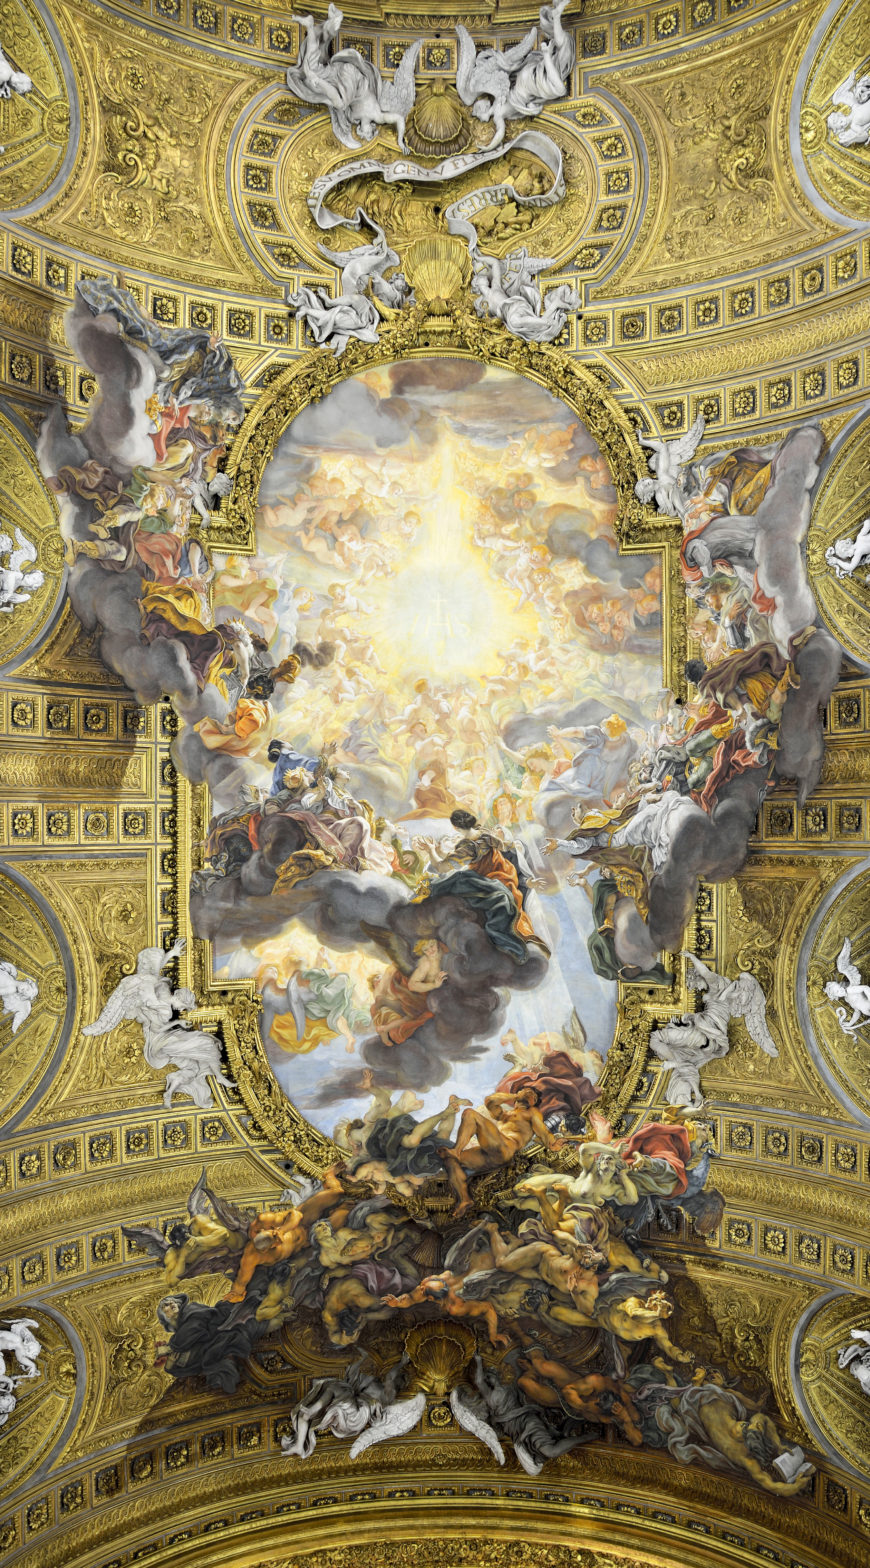 Giovanni Battista Gaulli, also known as il Baciccio, The Triumph of the Name of Jesus, 1672–85, Il Gesù ceiling fresco (Rome, Italy)